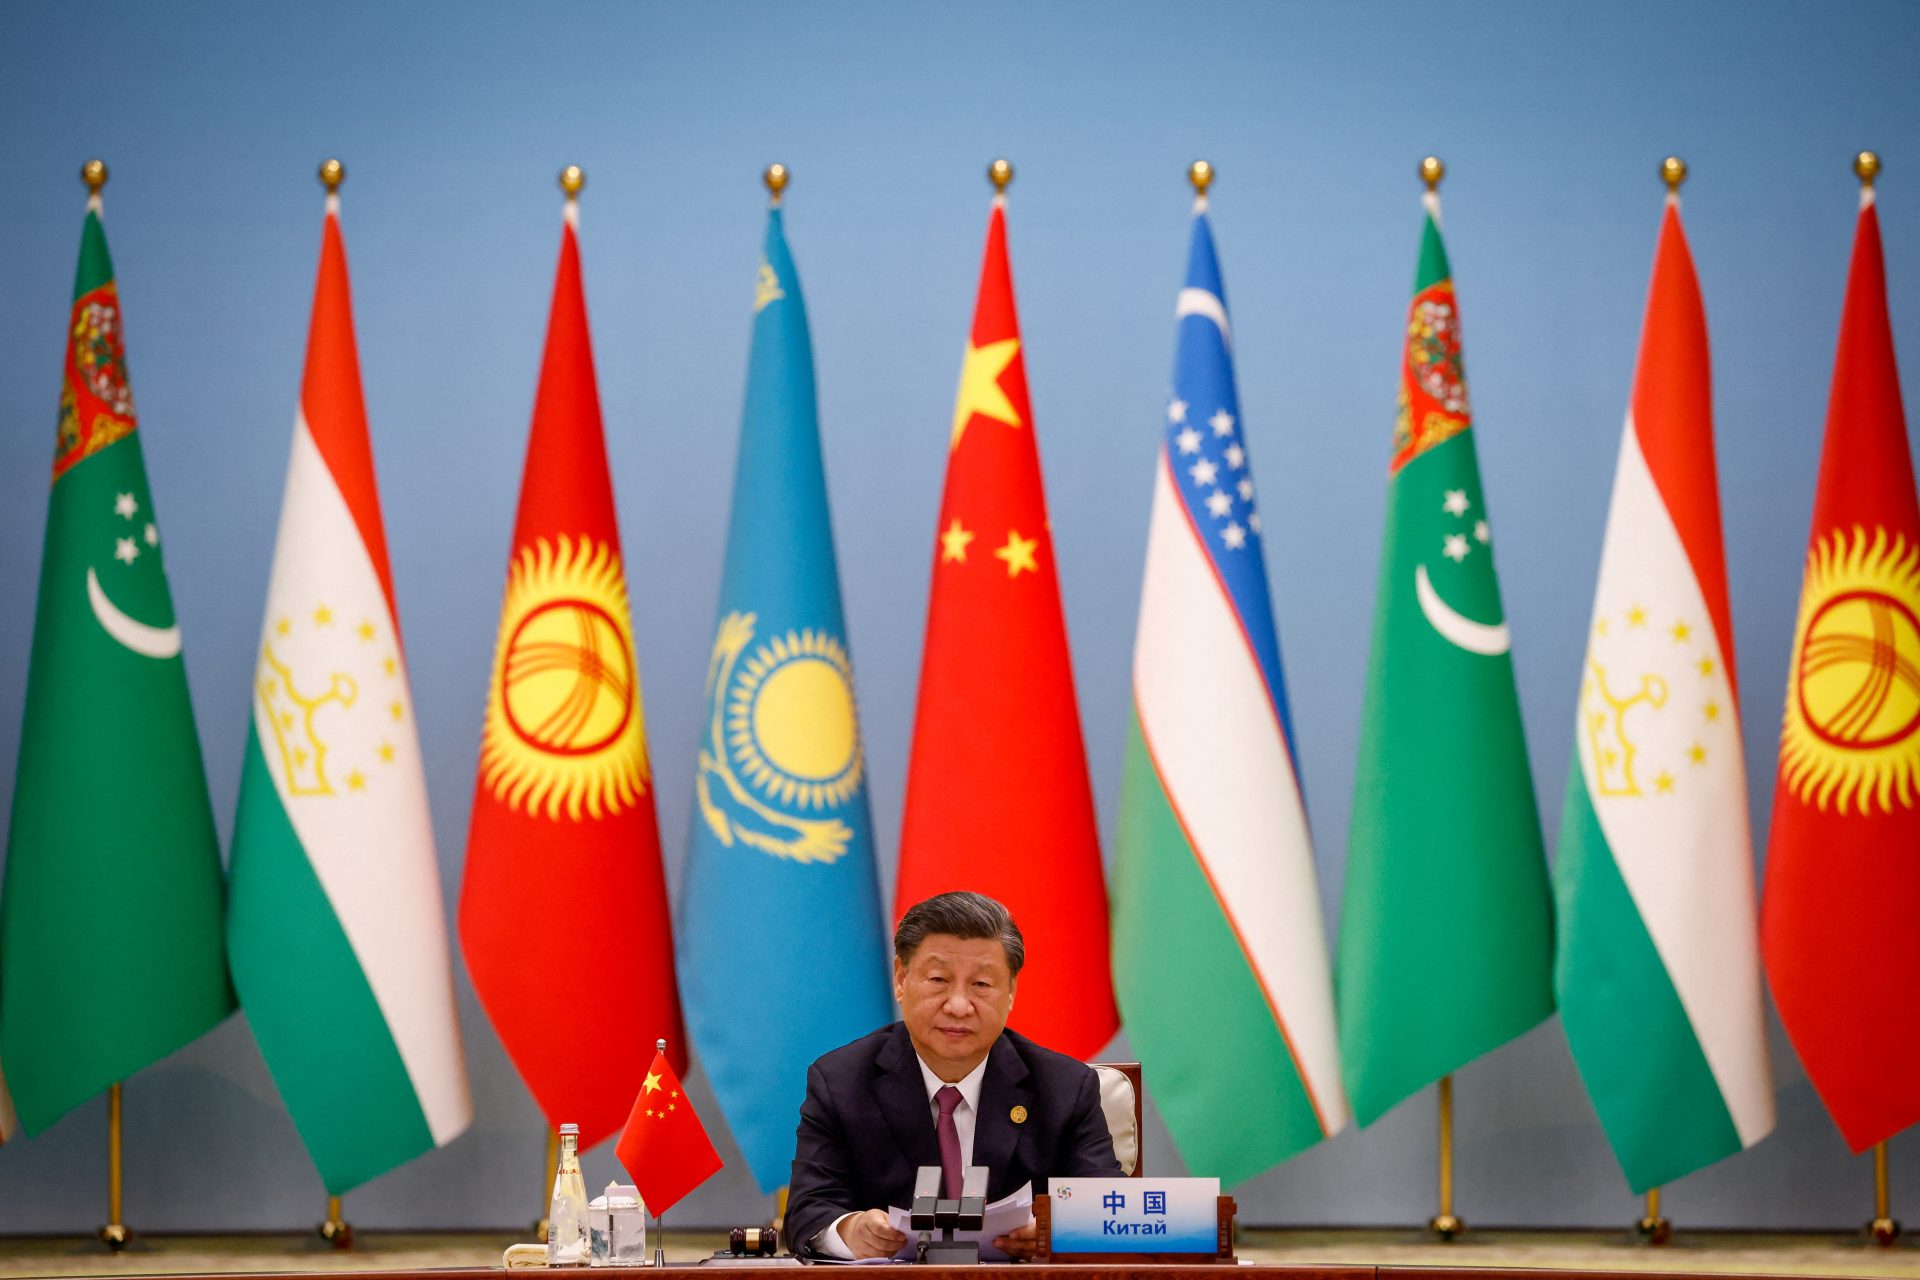 پس از موفقیت بریکس، رئیس جمهور شی جین پینگ احتمالا از اجلاس سران G20 صرف نظر خواهد کرد